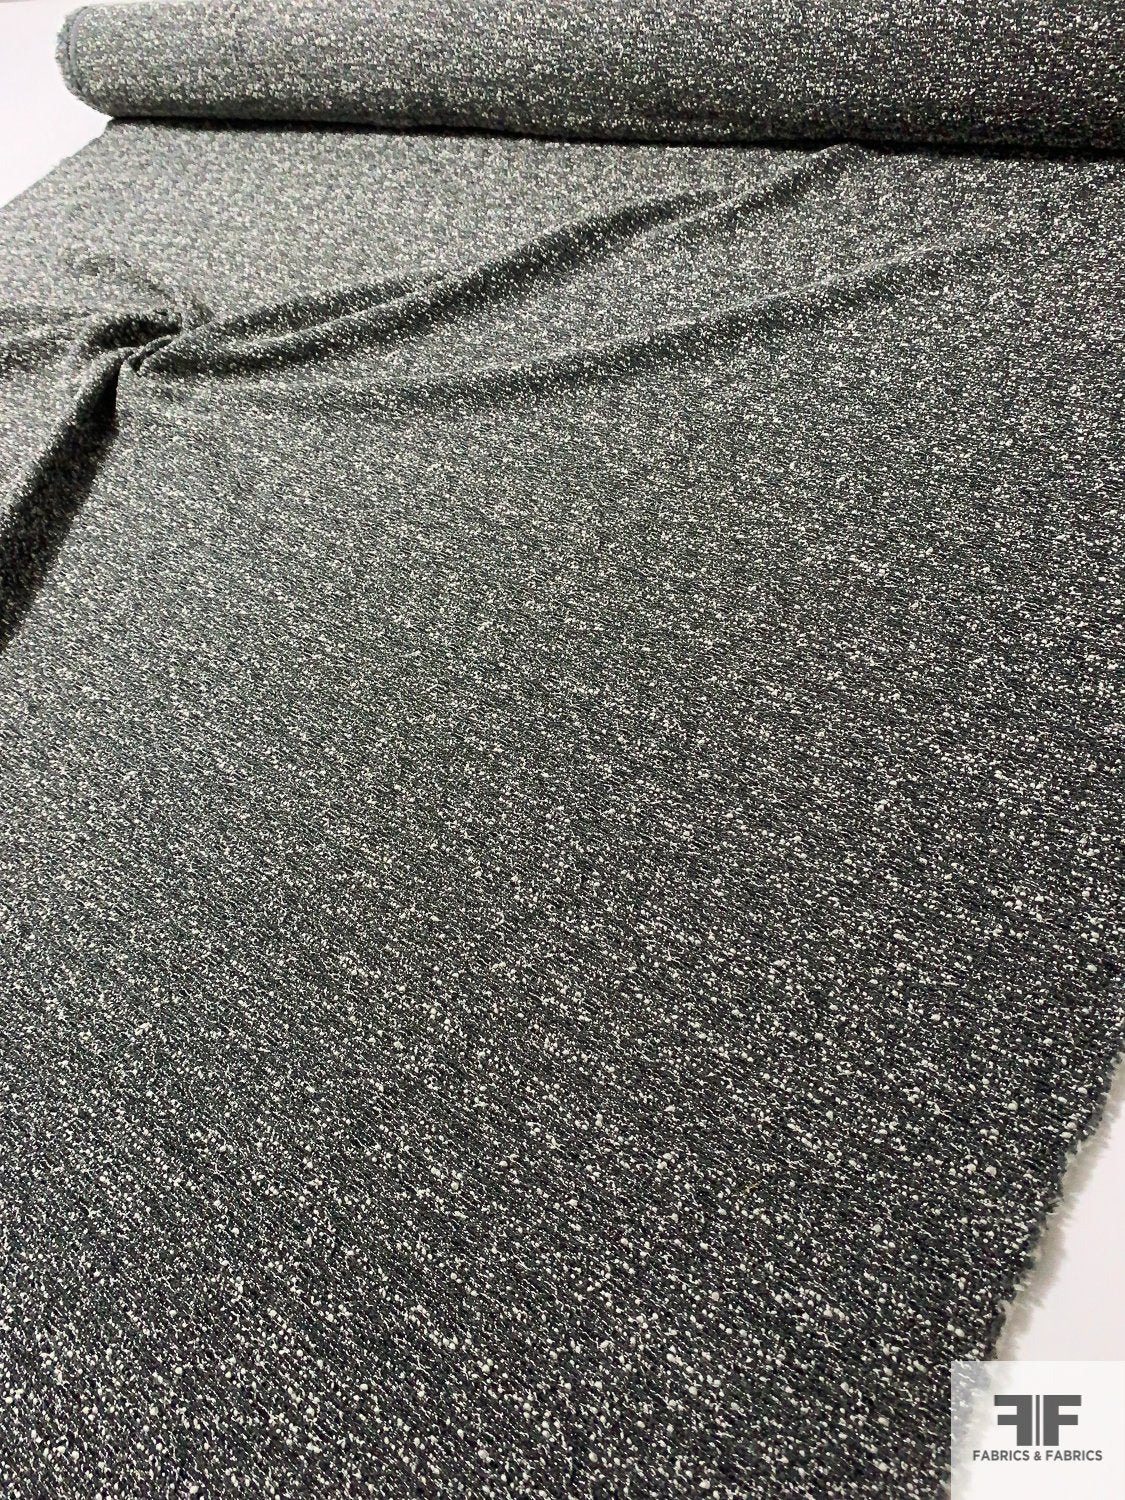 Italian Fancy Ladies Tweed Suiting with Lurex Fibers - Steel Grey / Black / Off-White